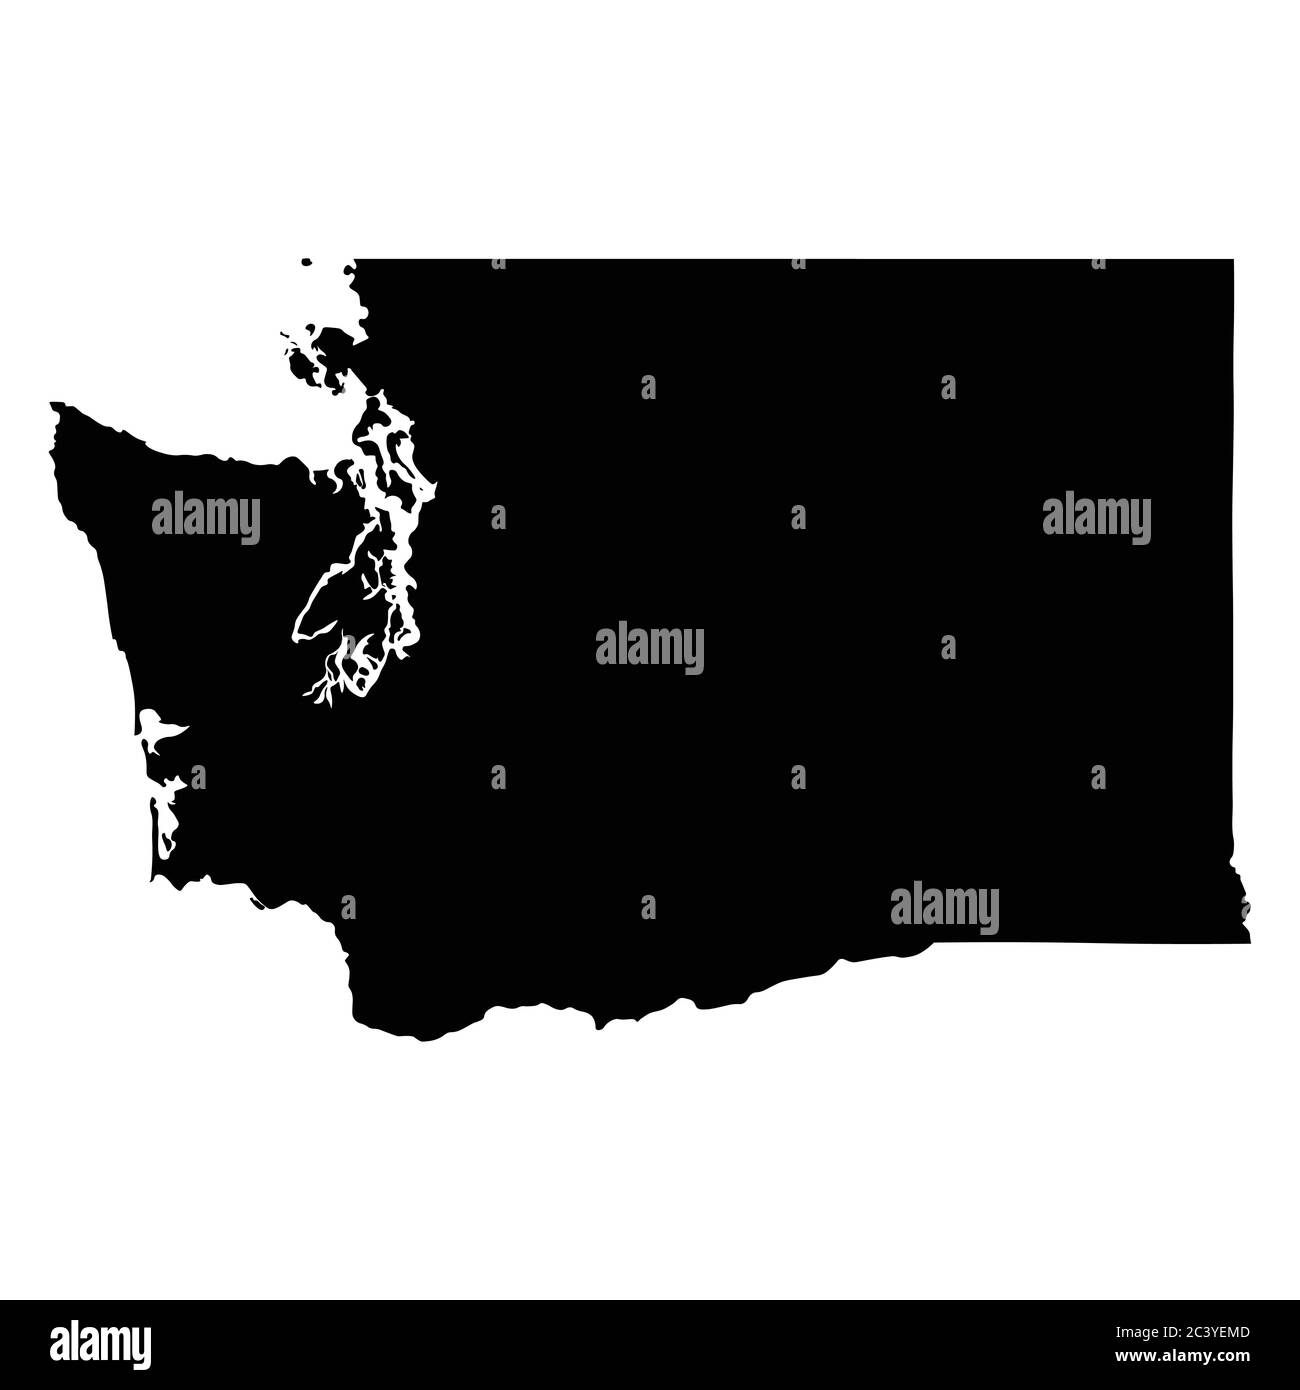 Washington WA State Map USA. Schwarze Silhouette einfarbige Karte isoliert auf weißem Hintergrund. EPS-Vektor Stock Vektor